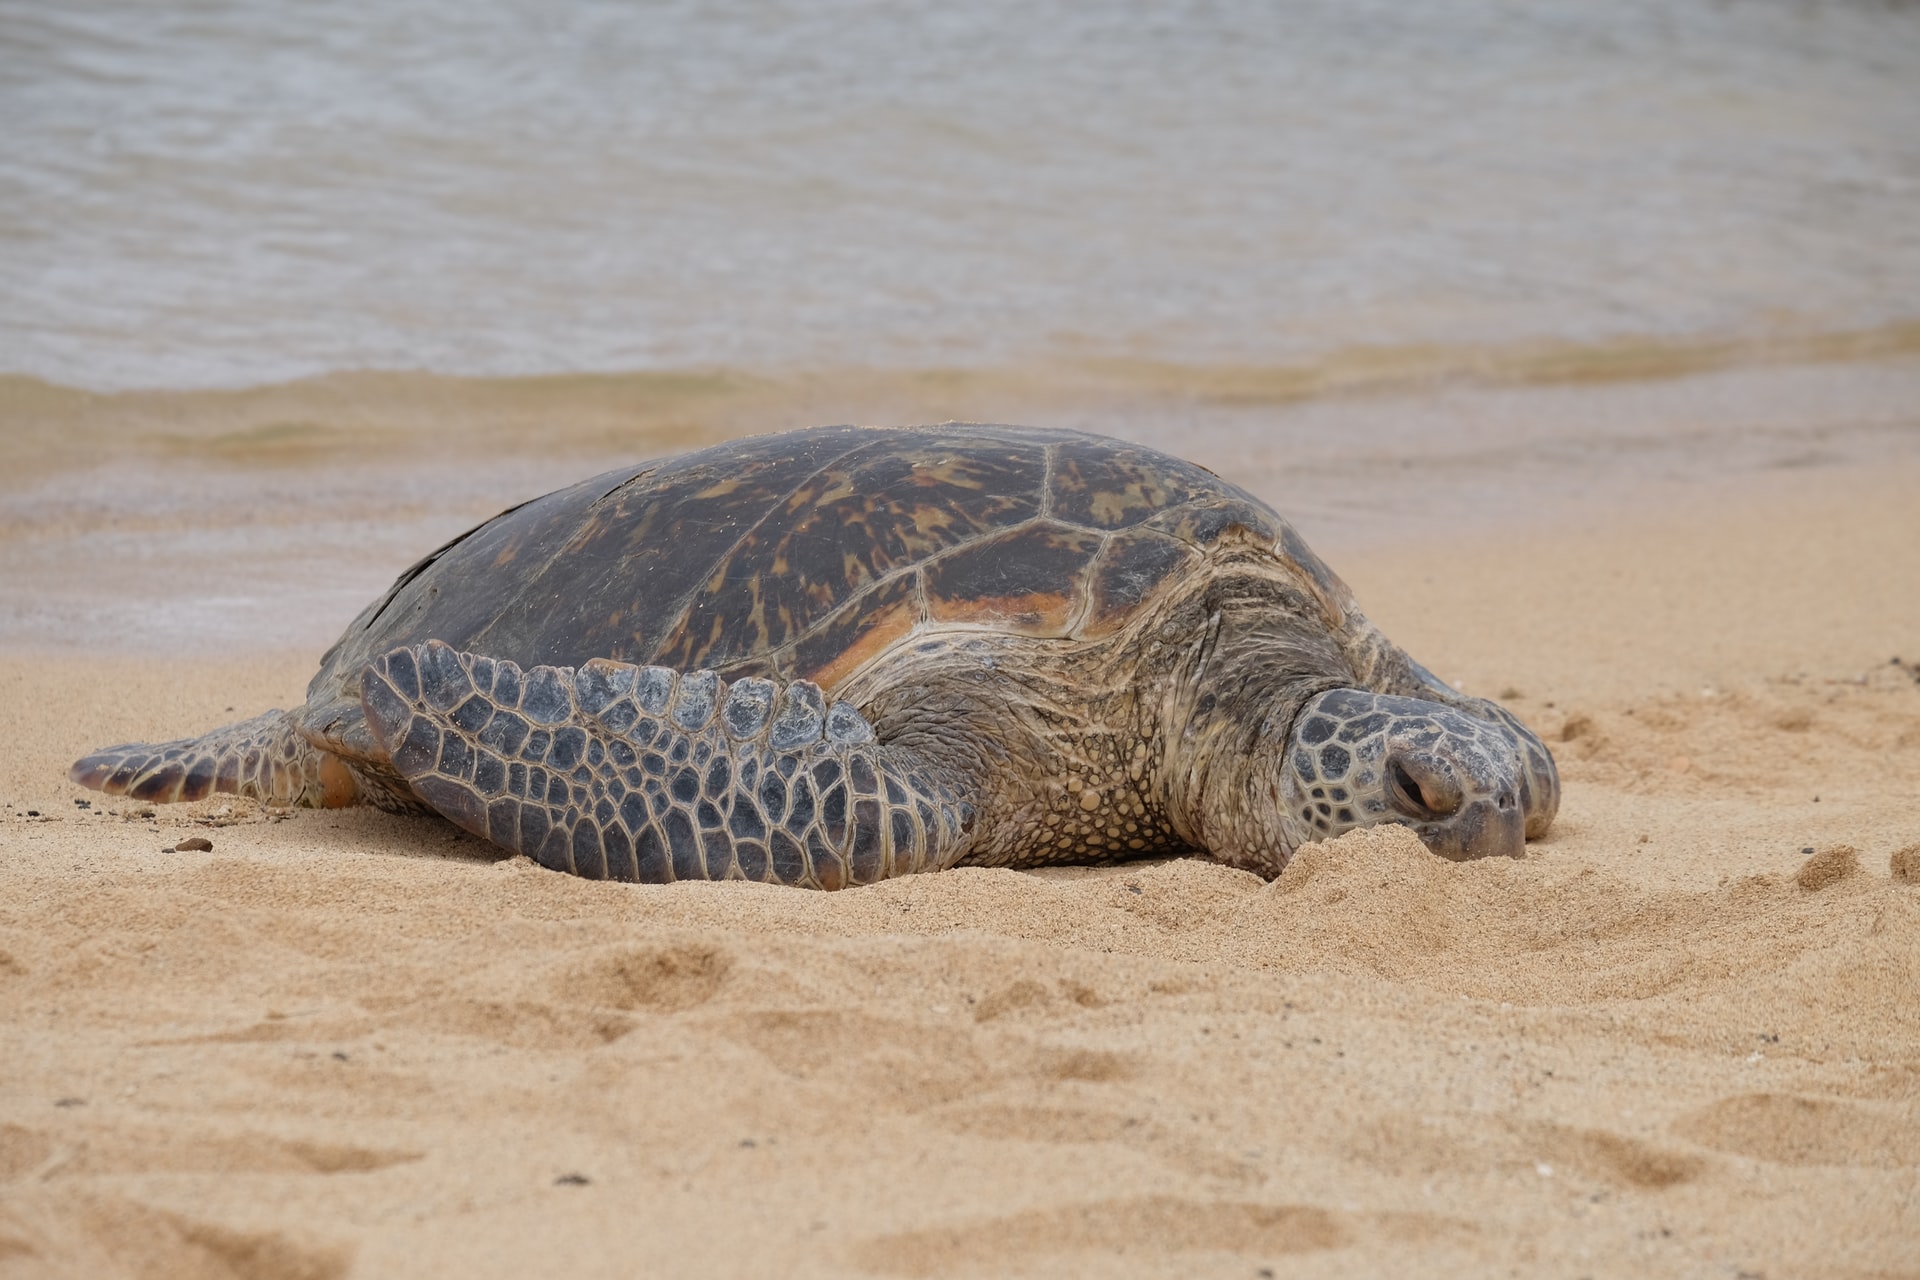 Si no fuera por los cientos de personas que reunieron décadas de datos en las más de 50 playas de Aldabra, habría sido difícil seguir los progresos realizados en la conservación de las tortugas.